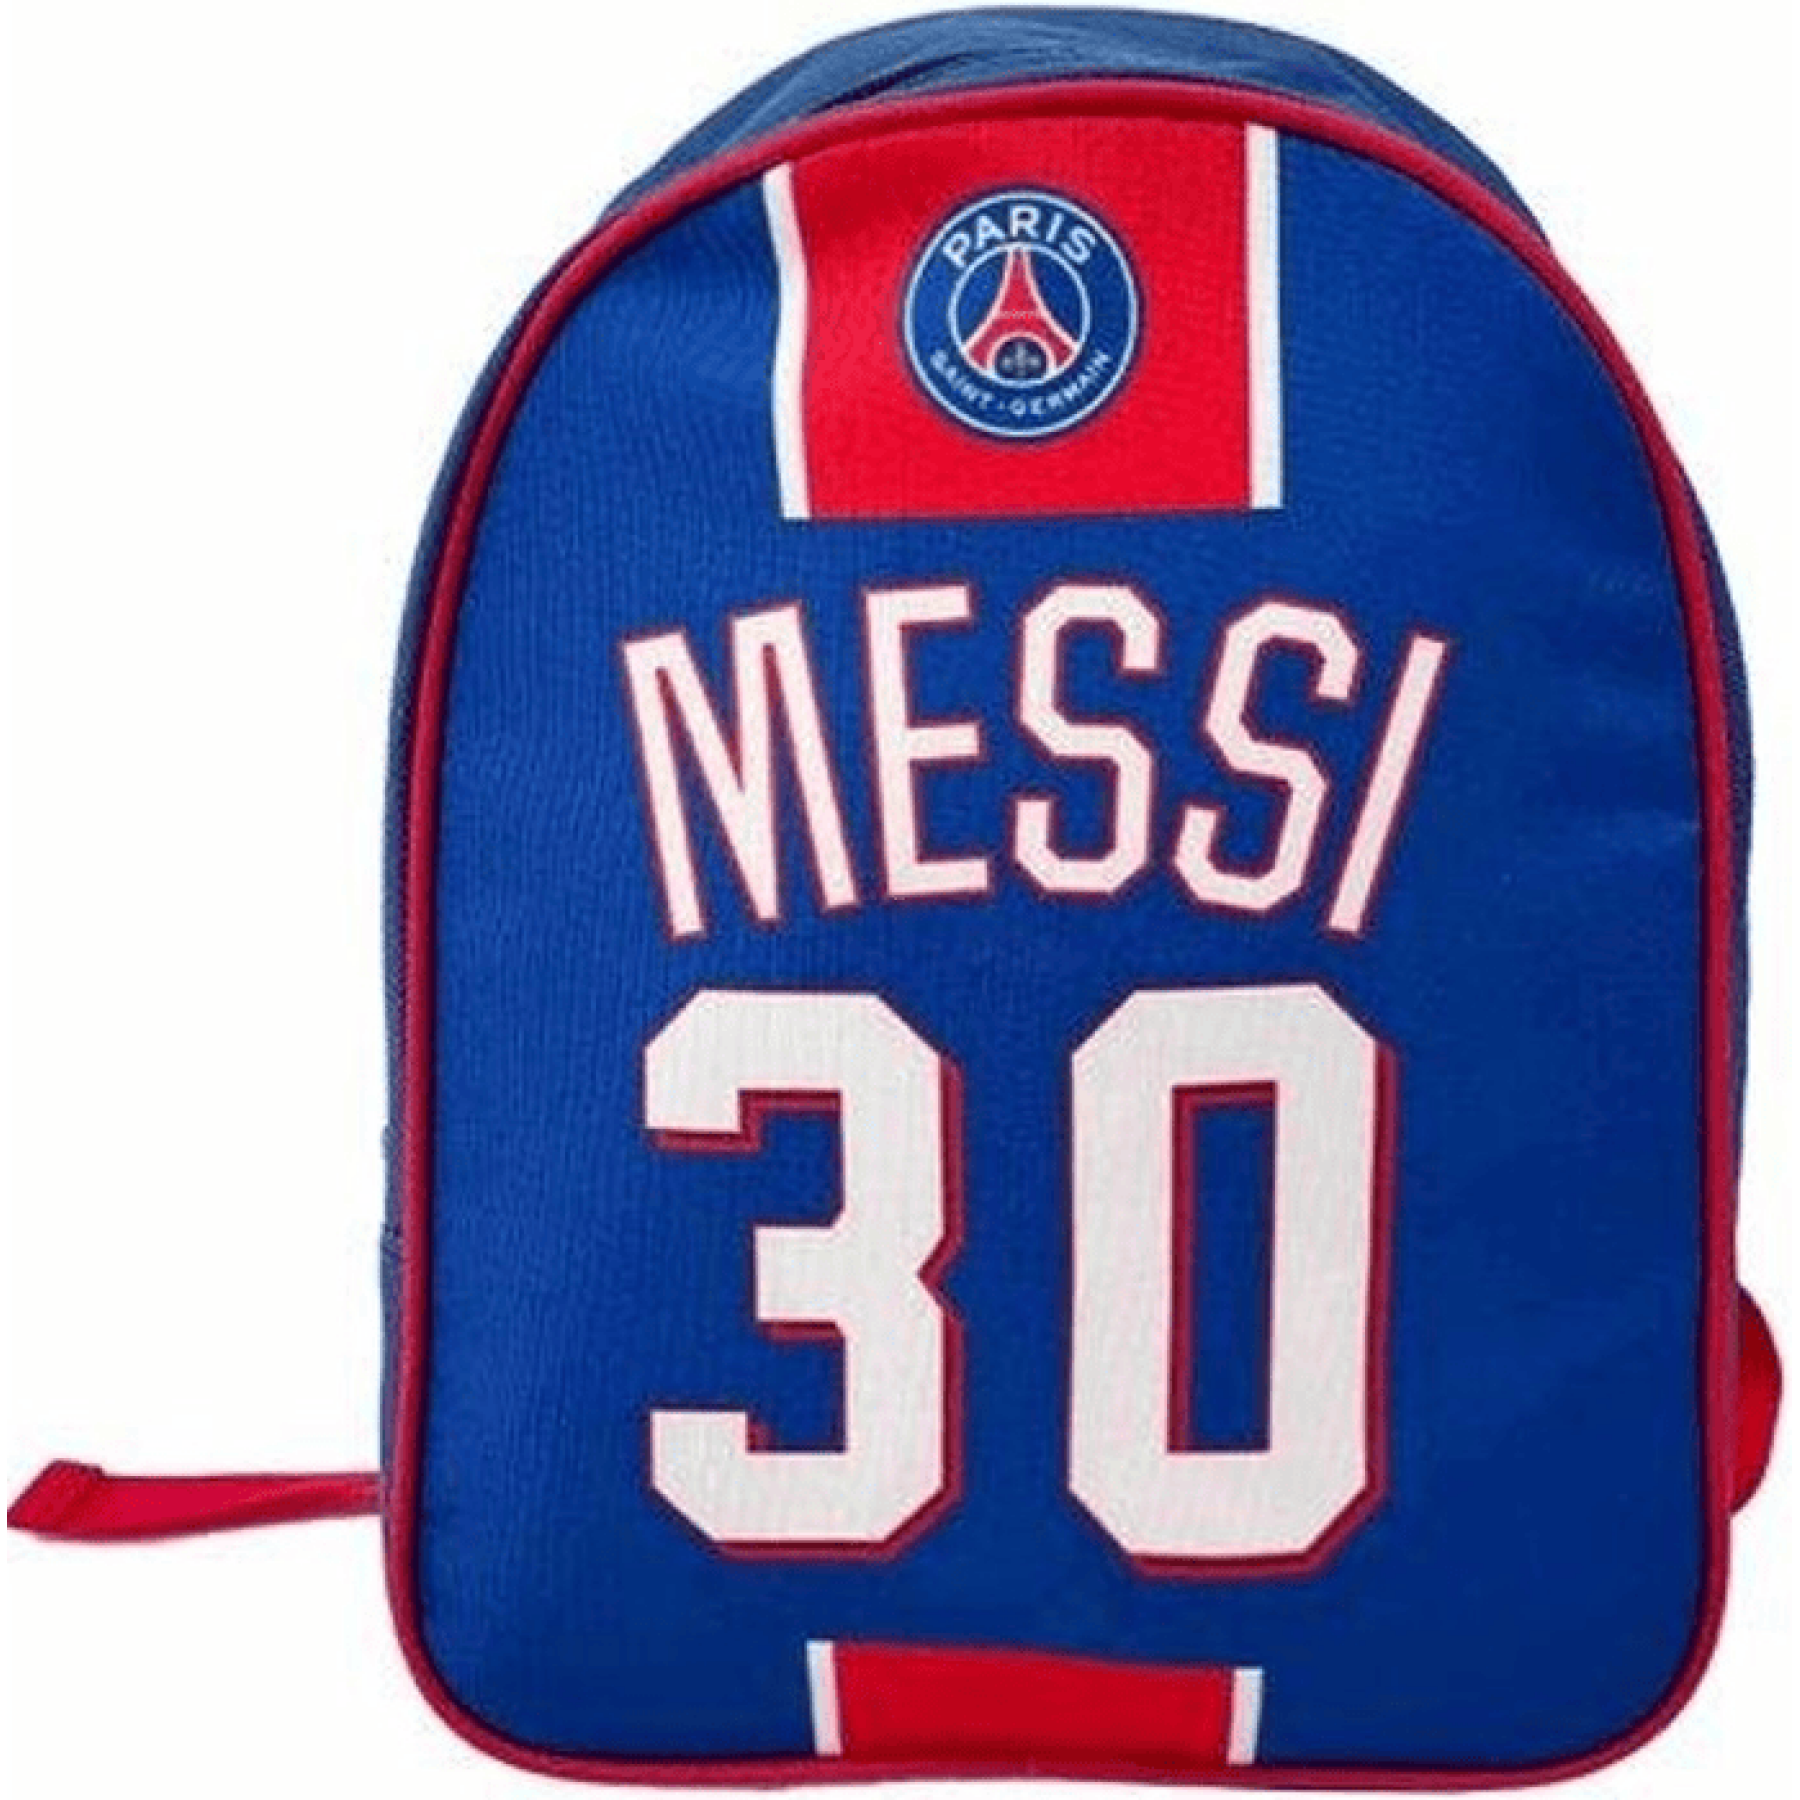 Children's backpack PSG Messi